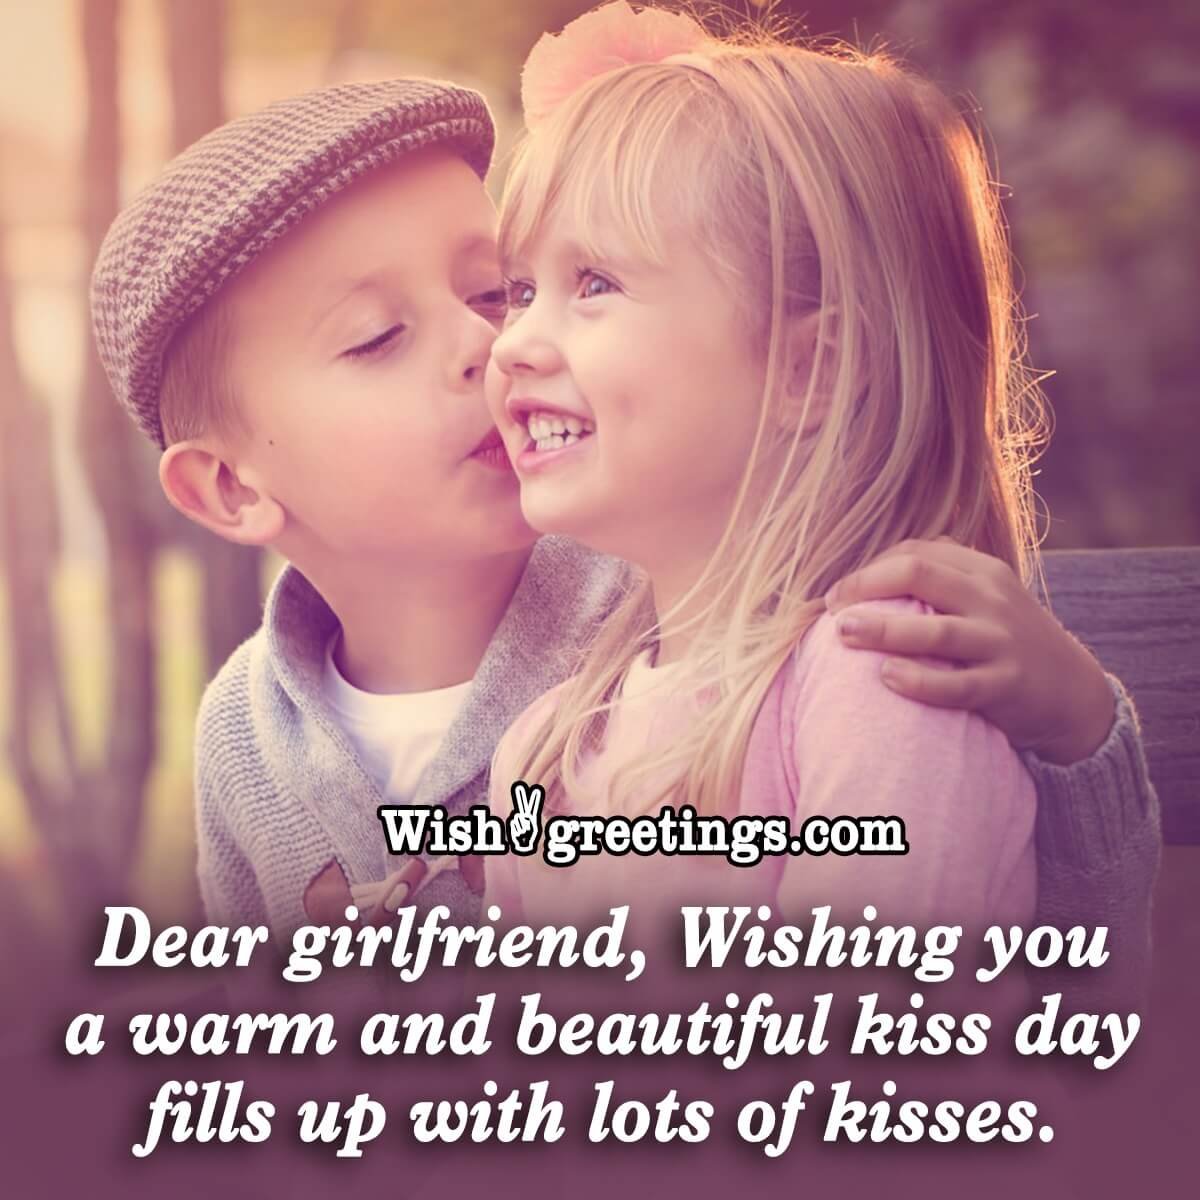 Happy Kiss Day Dear Girlfriend!